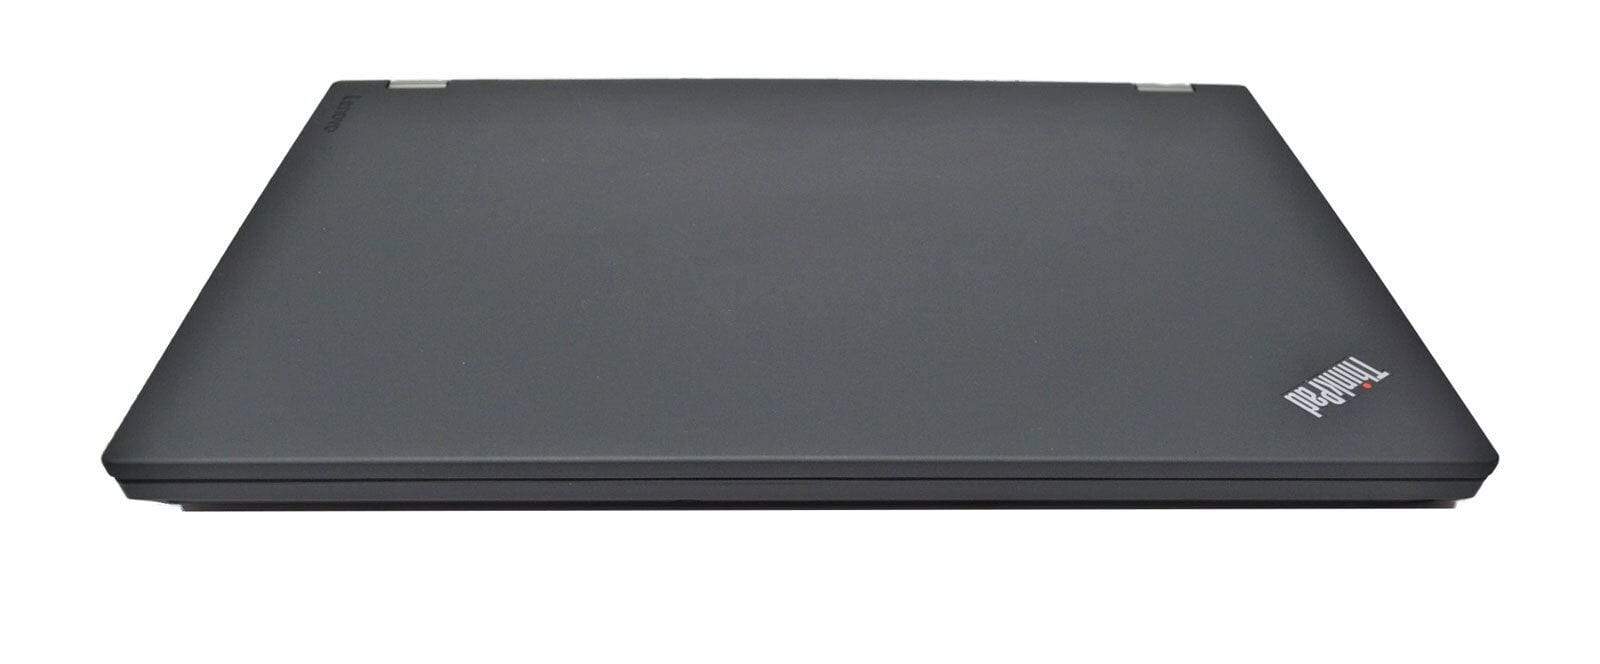 Lenovo Thinkpad P50 Laptop: Core i7-6700HQ, 512GB SSD, Quadro, 16GB RAM - CruiseTech